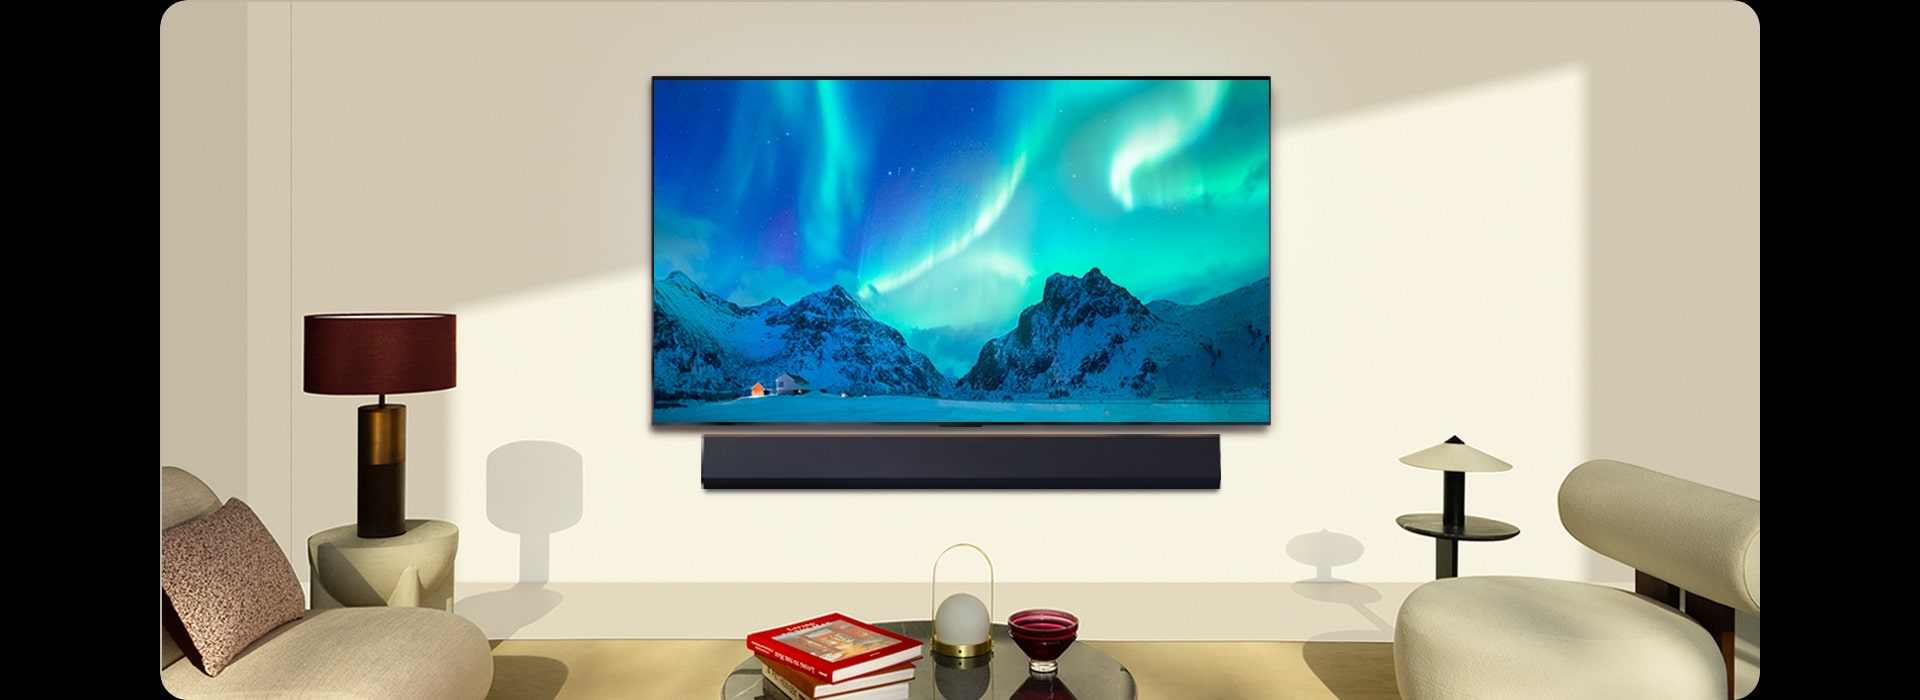 A imagem de uma LG TV e LG Soundbar num espaço habitacional moderno durante o dia. A imagem do ecrã da aurora boreal é exibida com os níveis de brilho ideais.